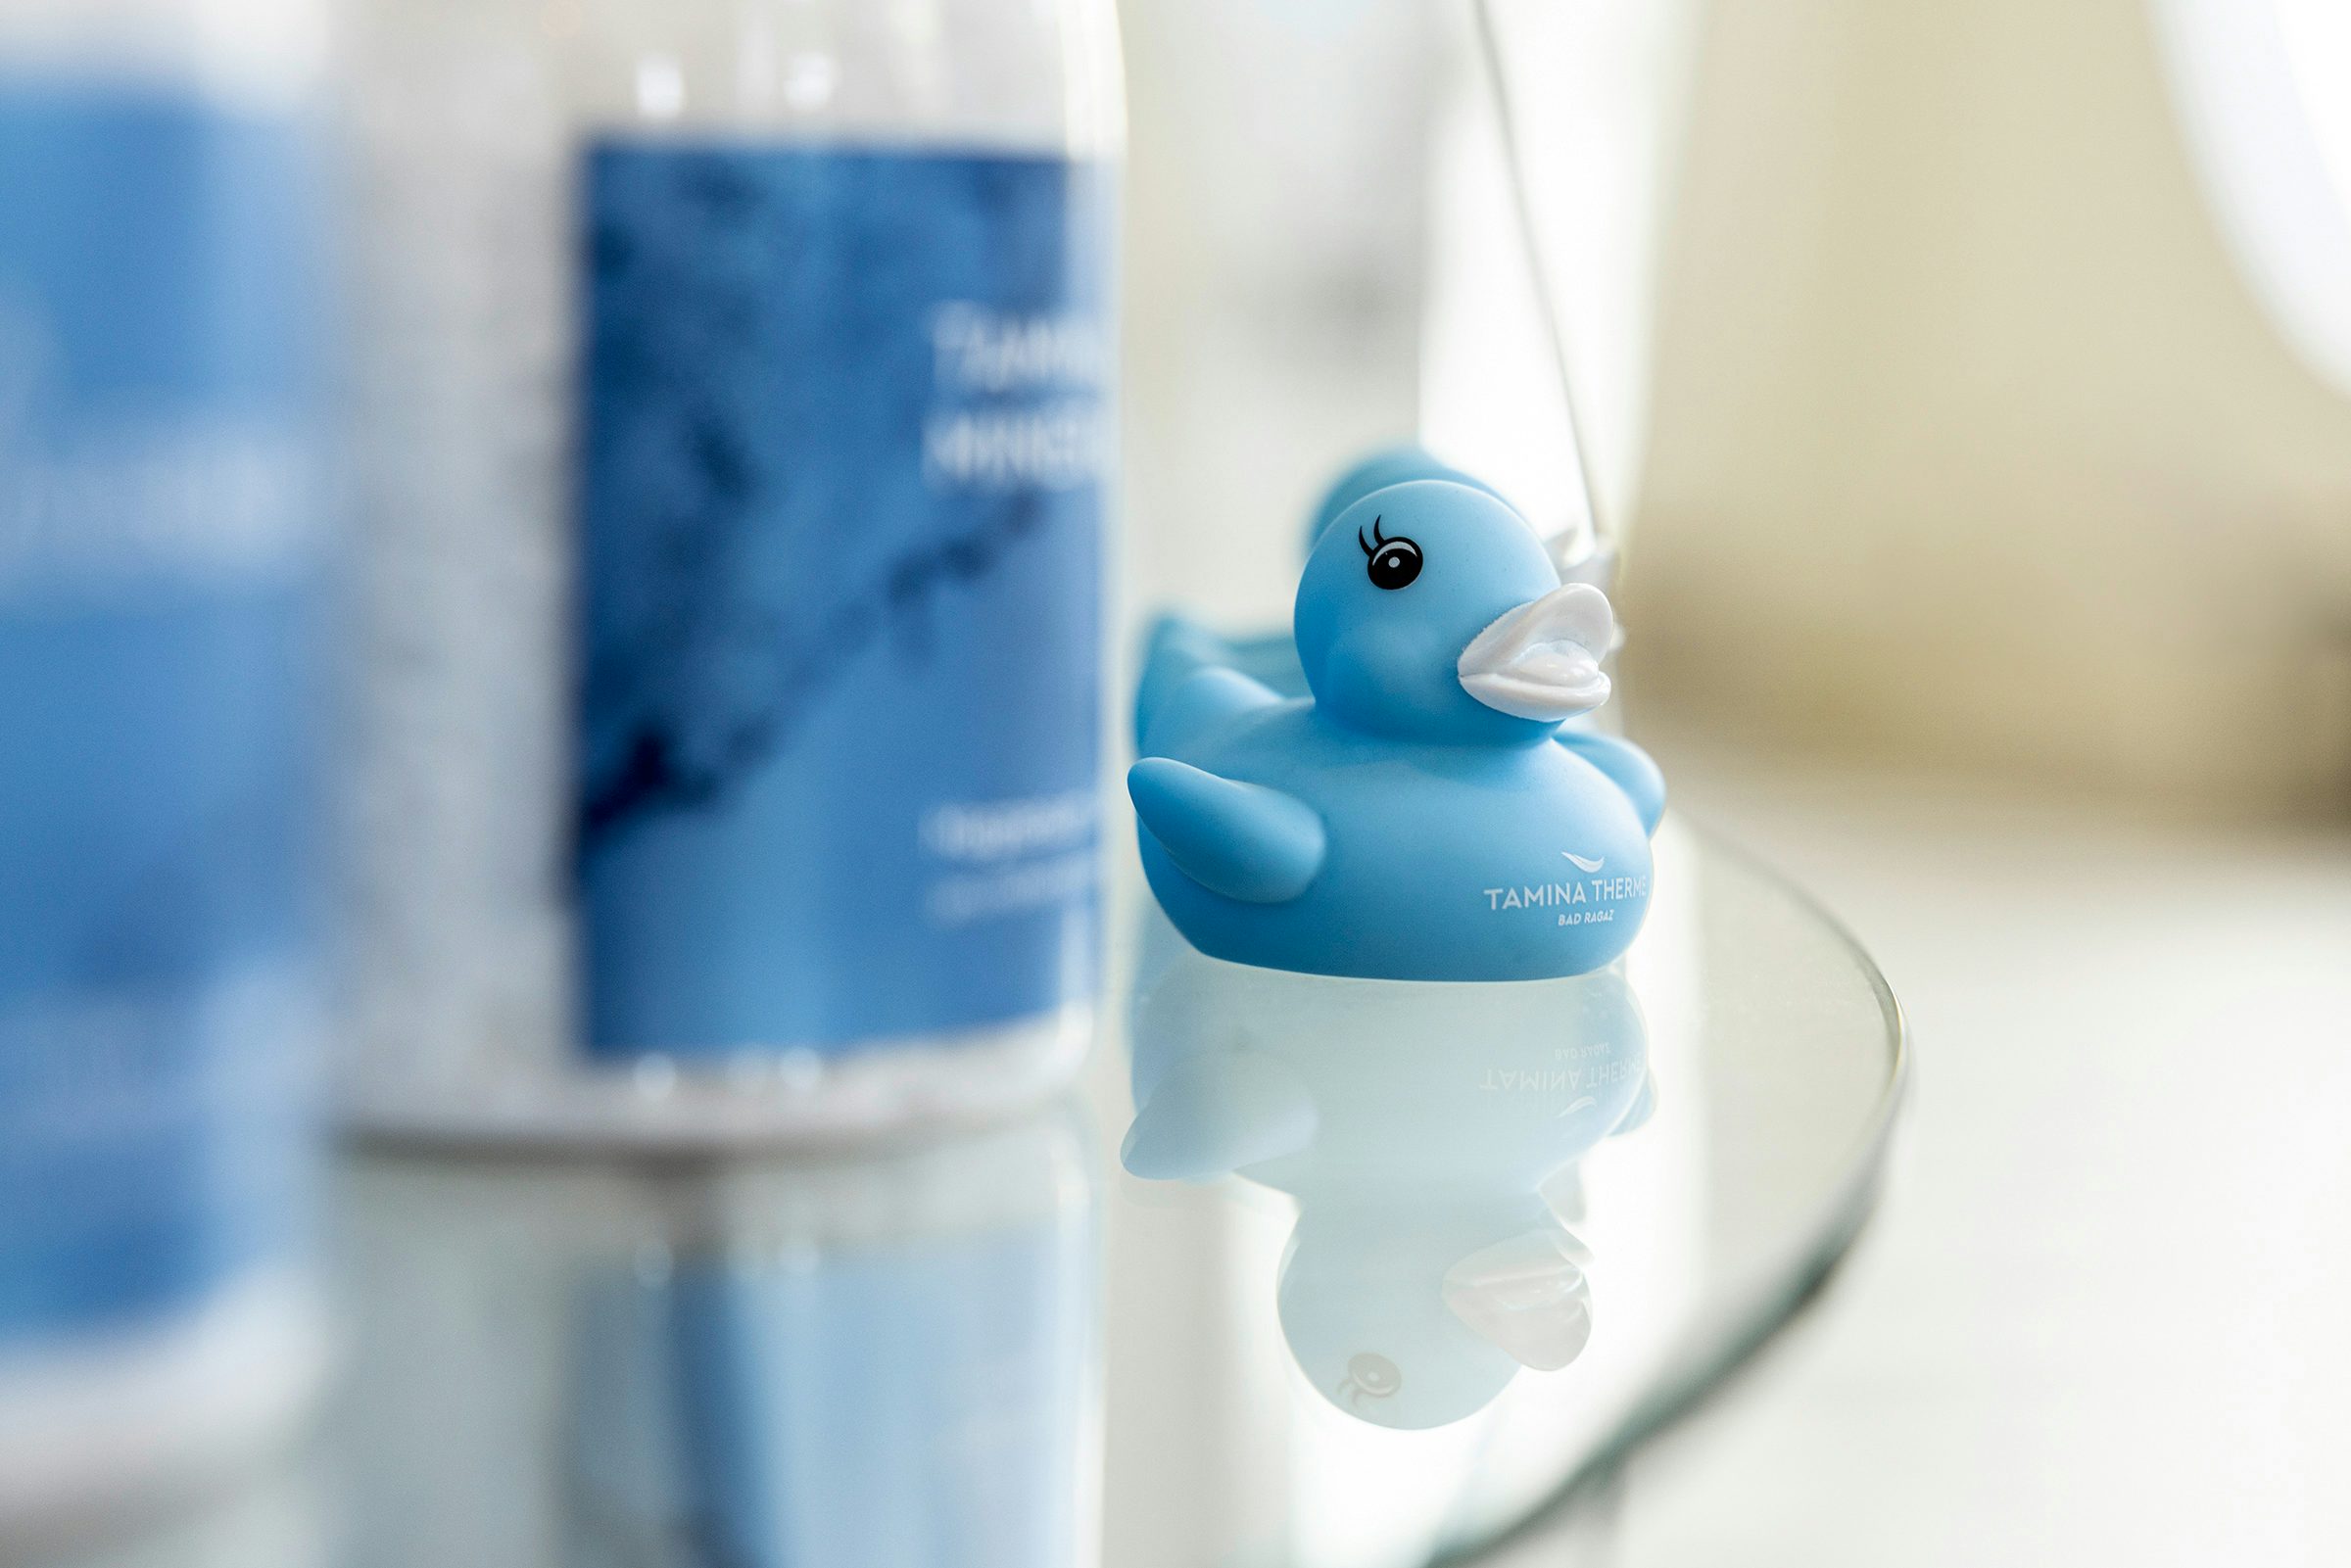 Detailaufnahme einer blauen Bade-Ente stehend in einem Verkaufsregal.